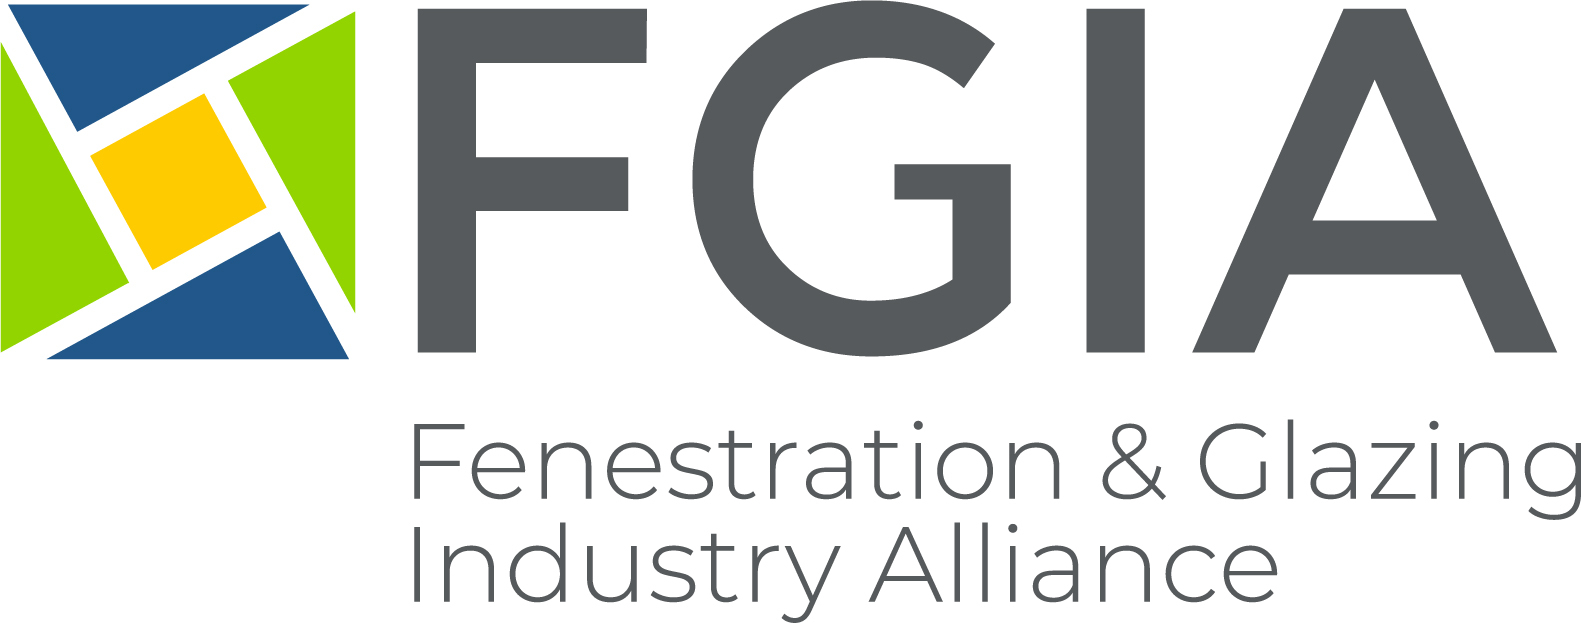 FGIA announces board of directors, strategic plan